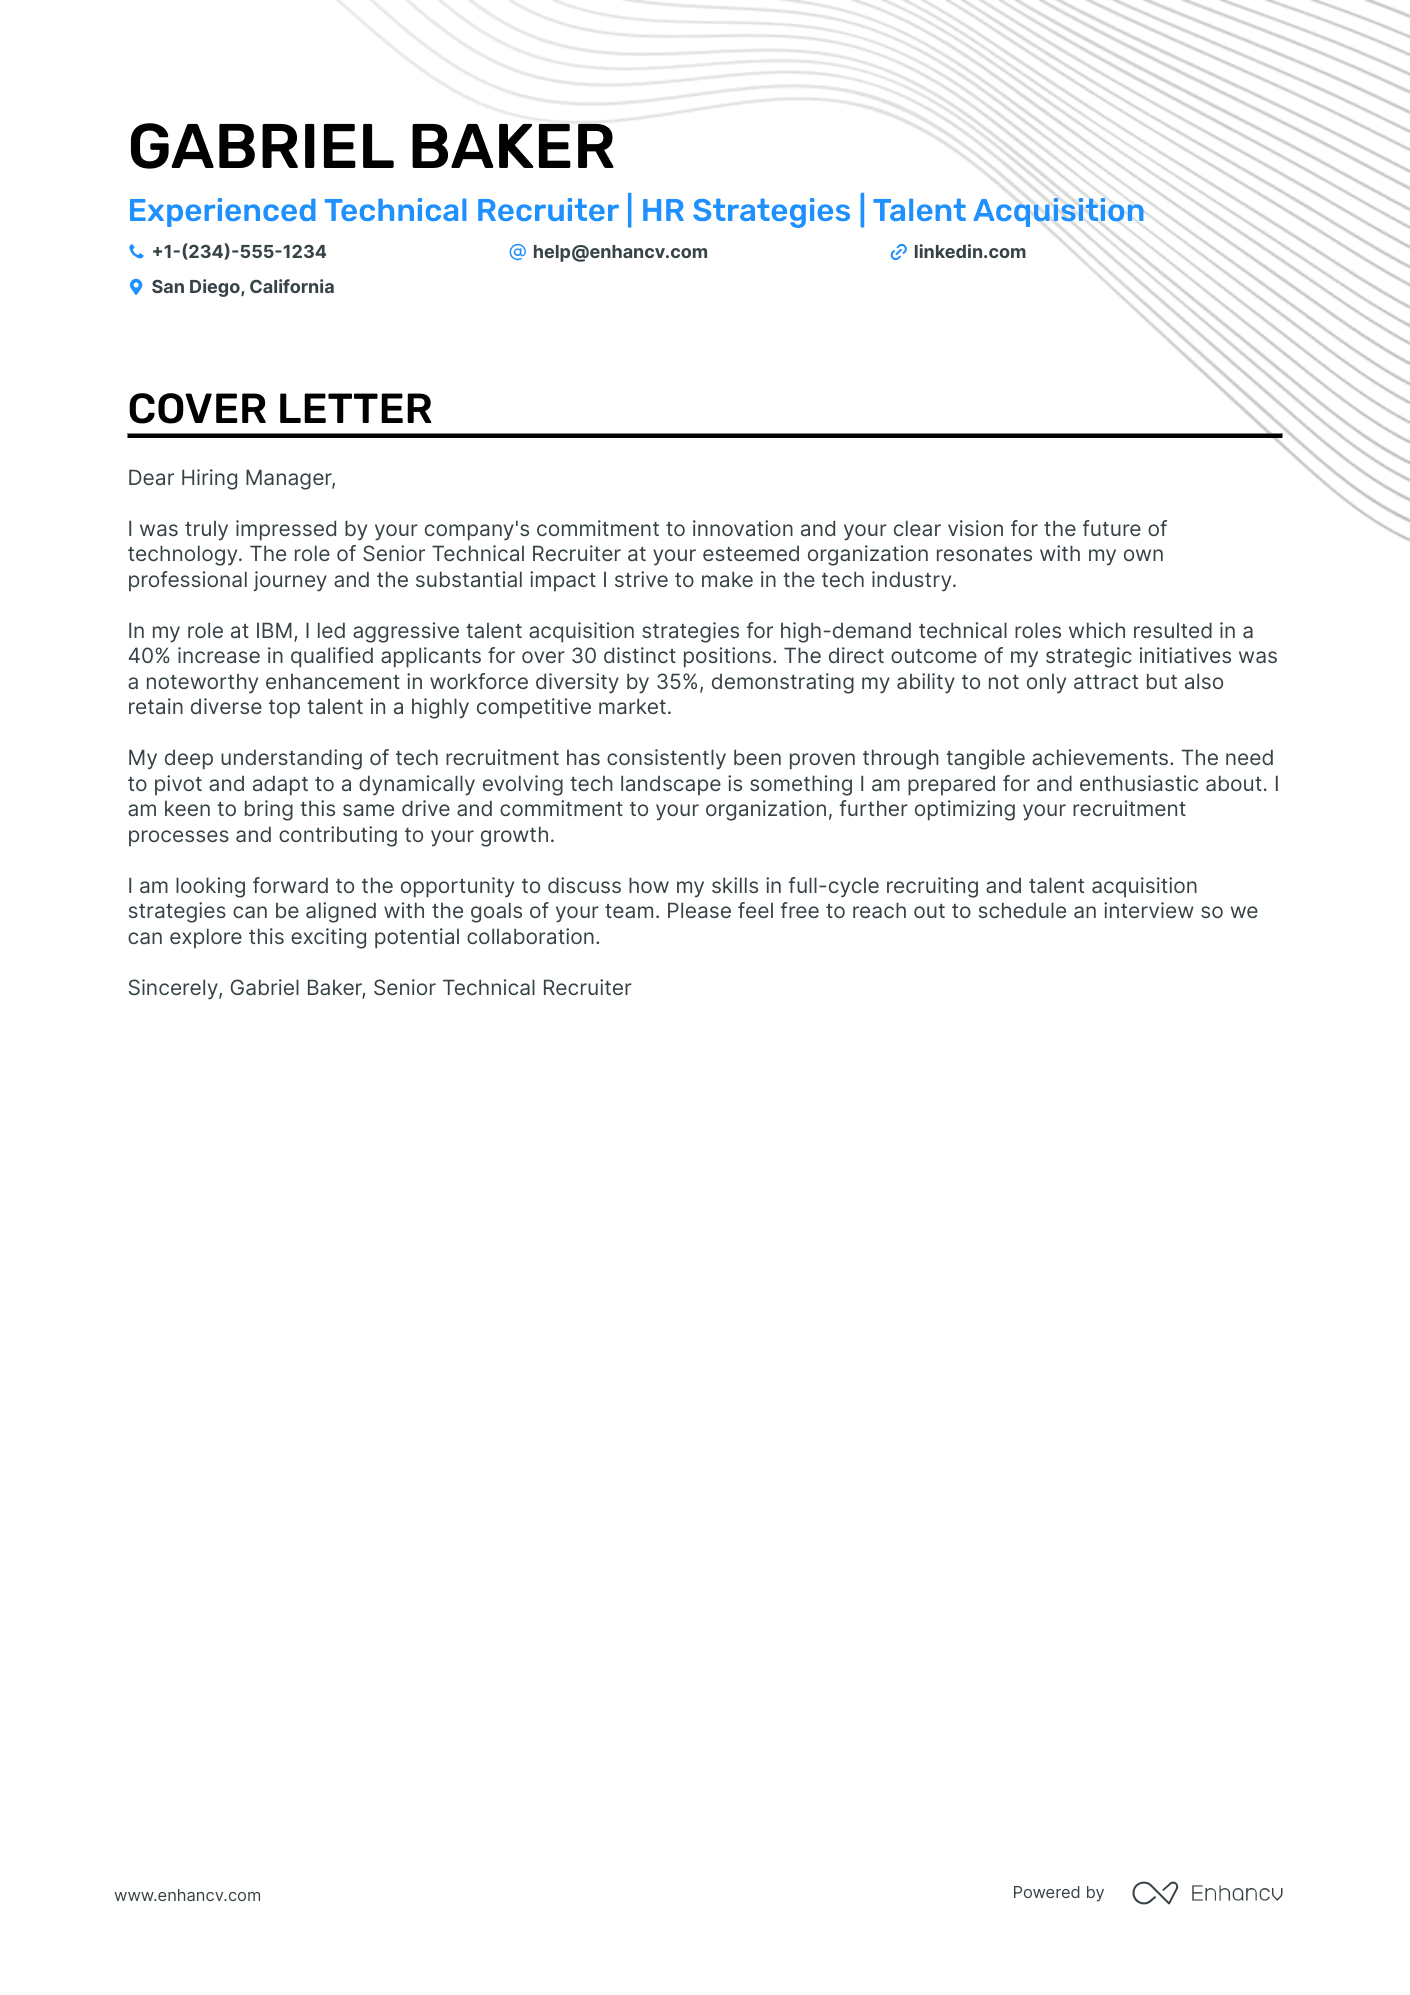 cover letter format for recruiter